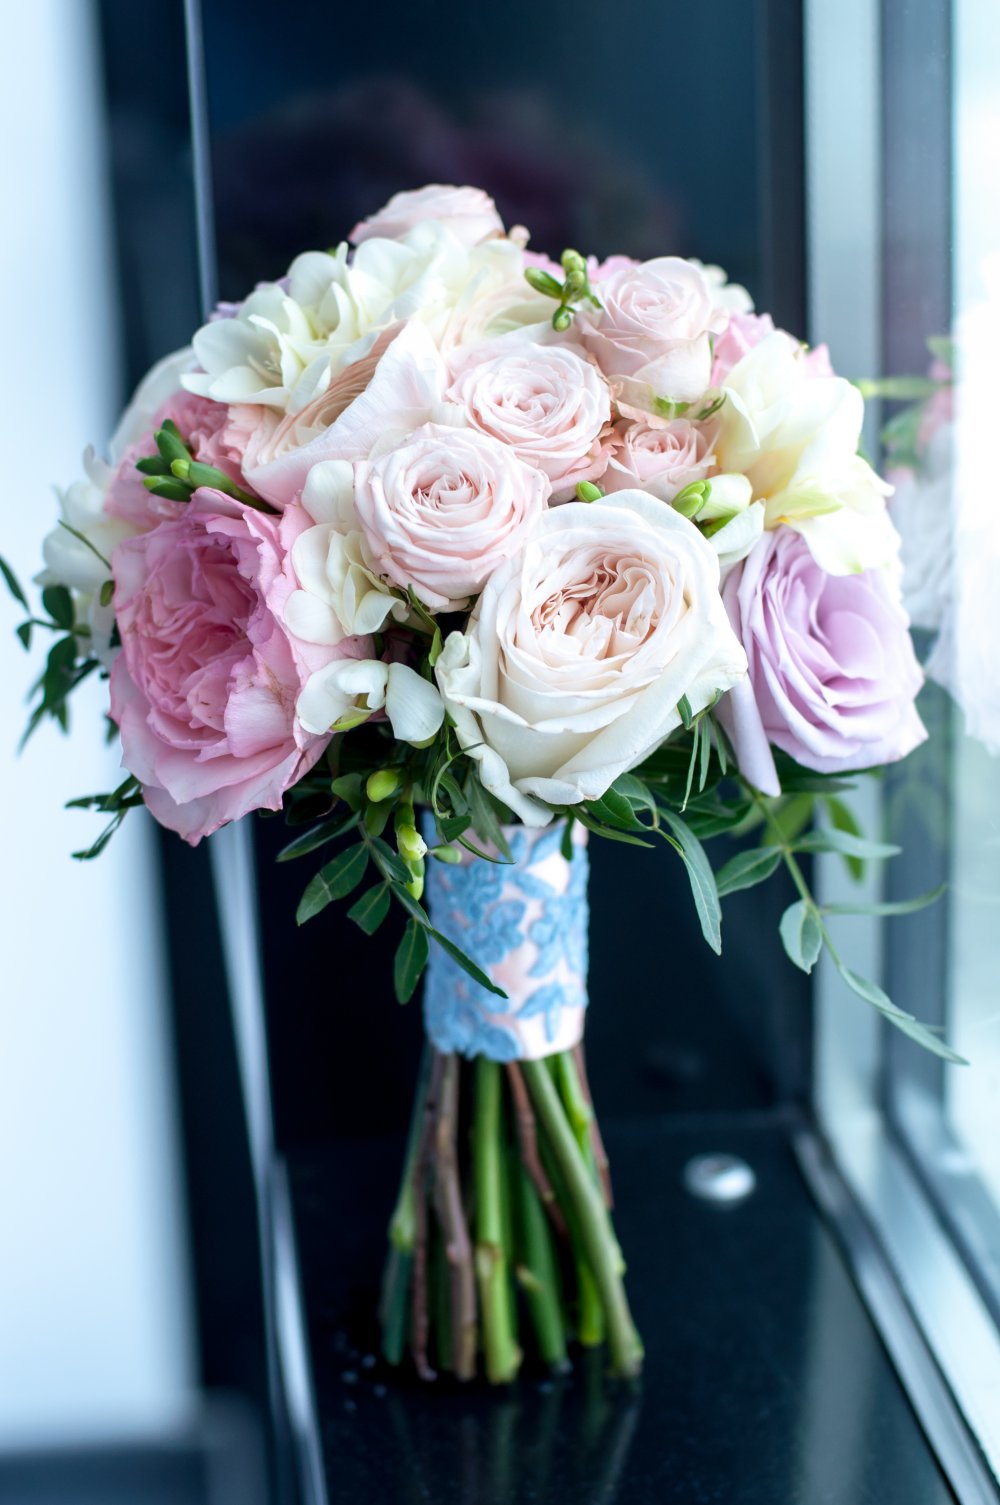 Оформление свадьбы Виктора и Юлии в цвете «розовый кварц» и «безмятежность»